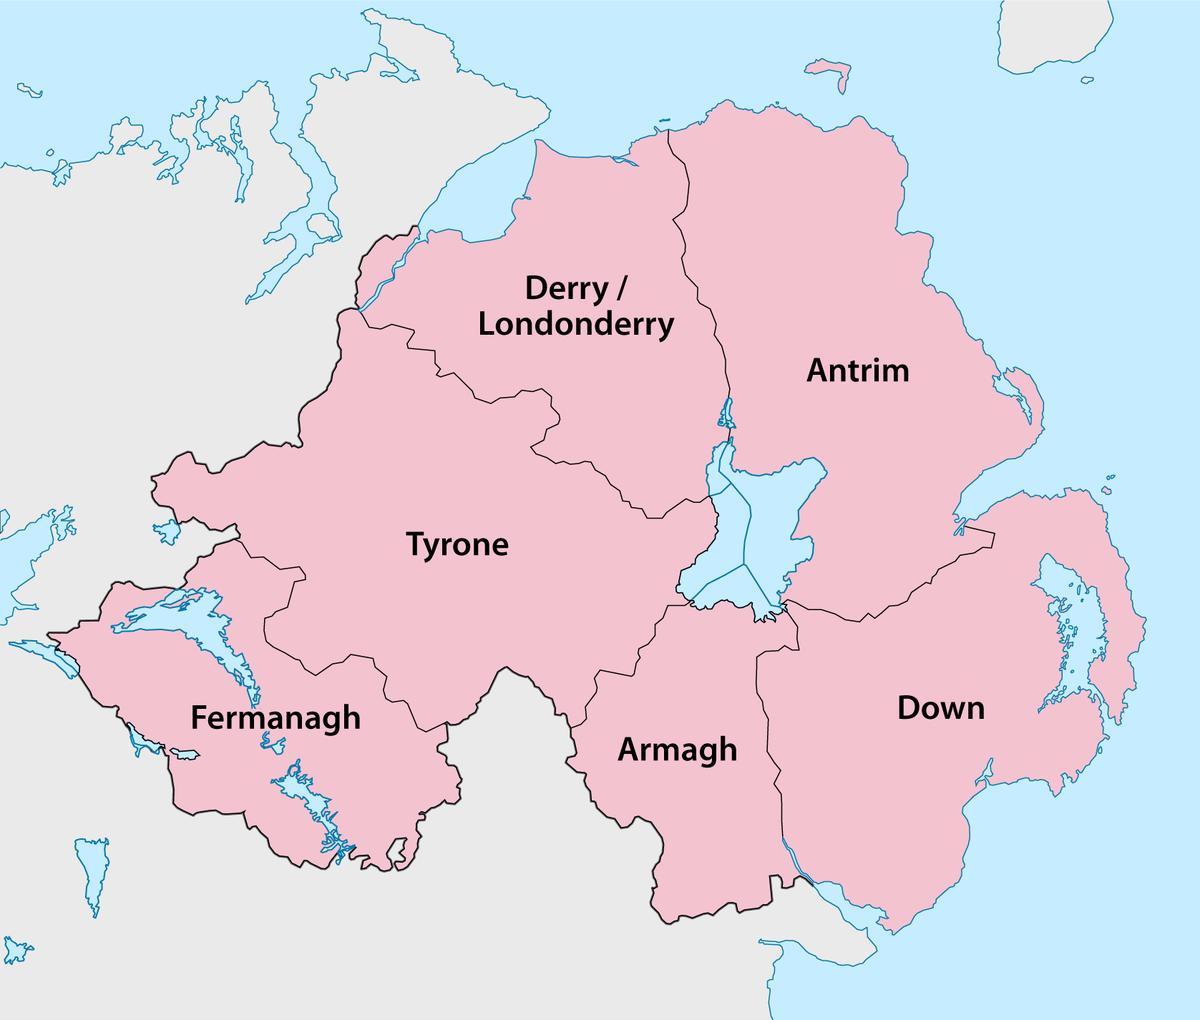 mapa ipar irlandako eskualdeak eta herriak